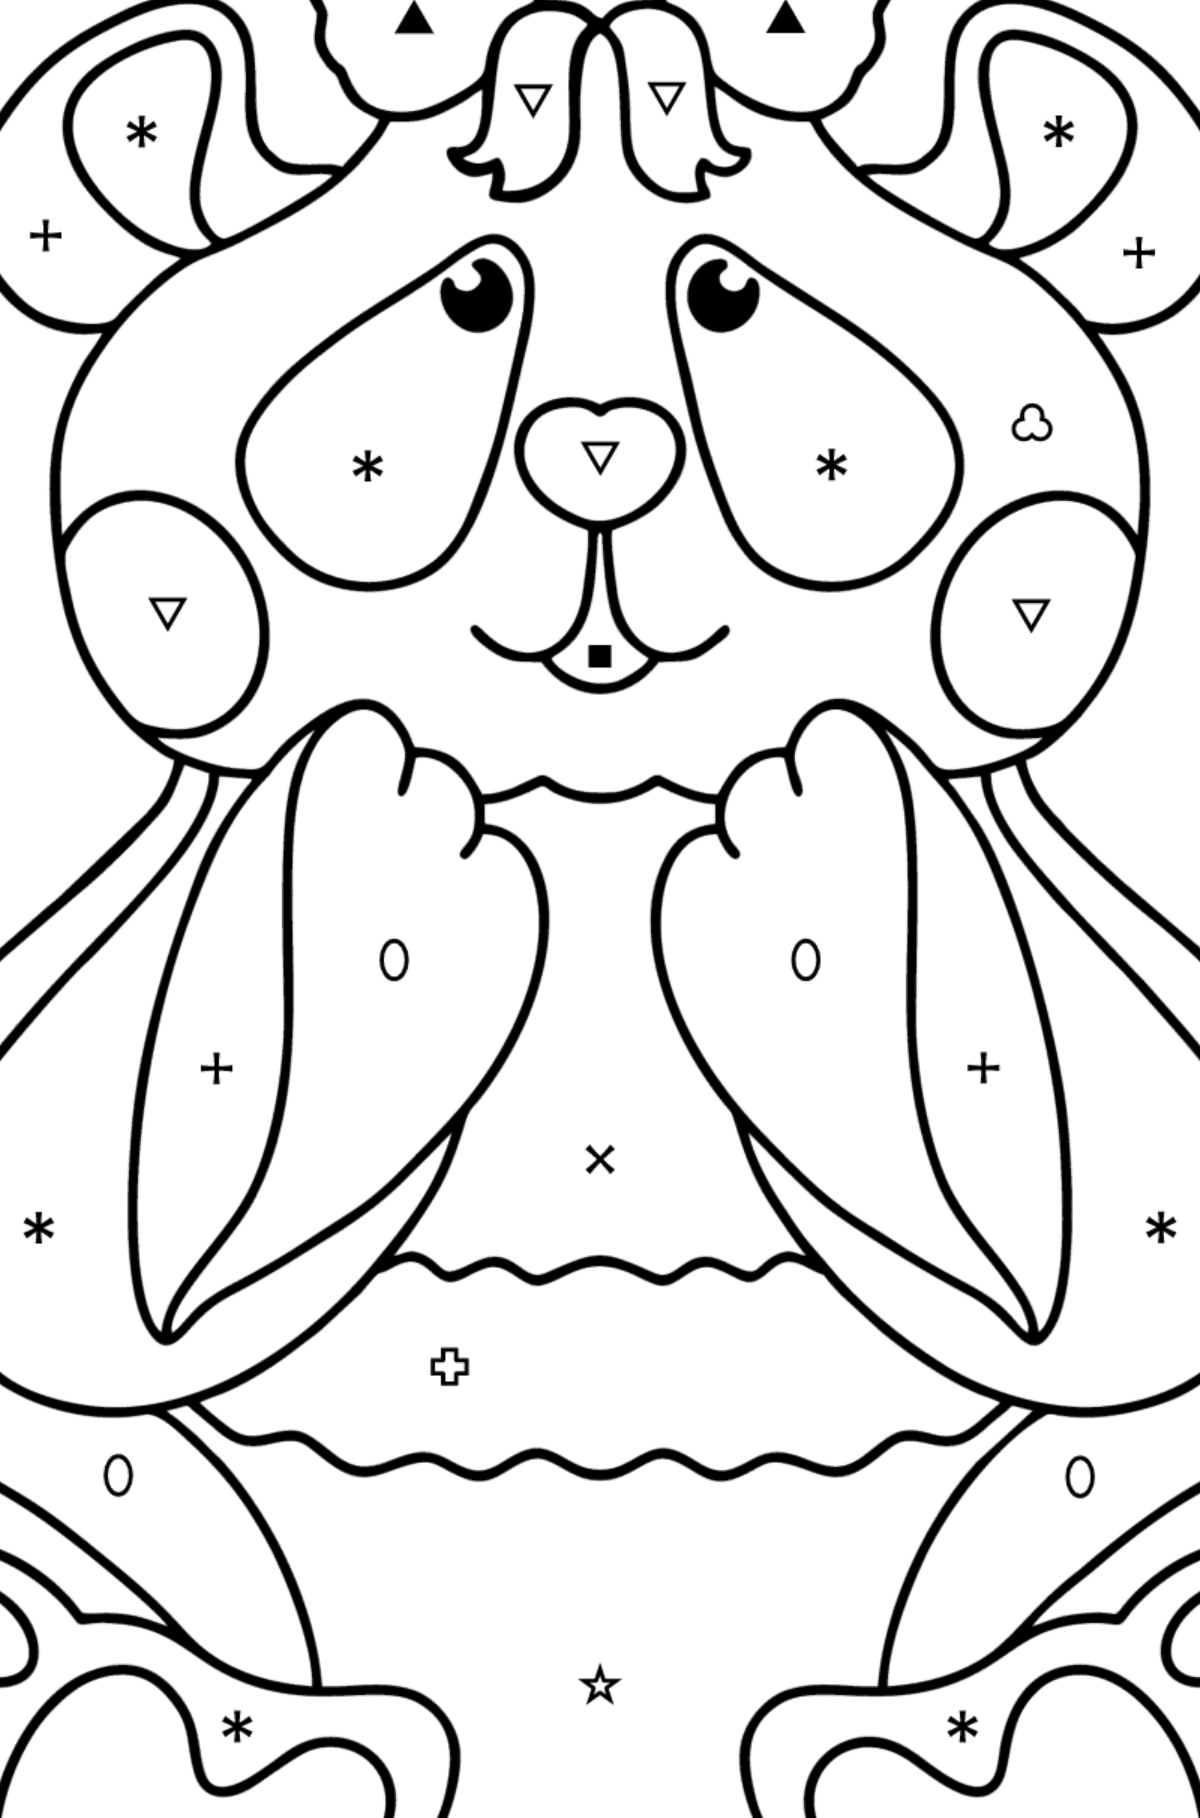 Boyama sayfası bebek panda - Sembollere ve Geometrik Şekillerle Boyama çocuklar için